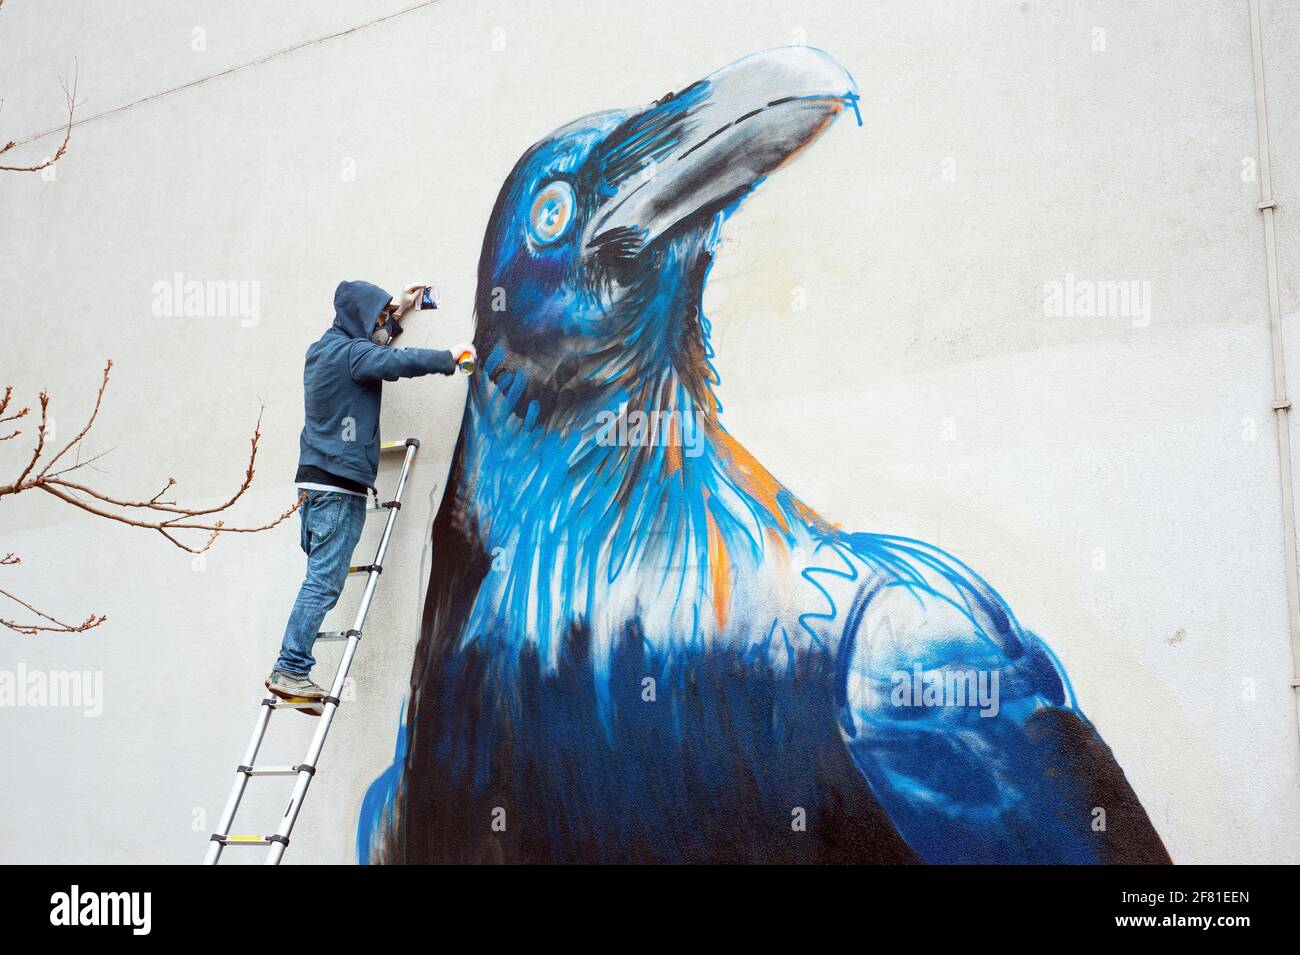 Primer plano del artista callejero Boe + ironía en acción. Crow mural está en la fabricación en Whiston Road, East London, Reino Unido. Abr 2013 Foto de stock